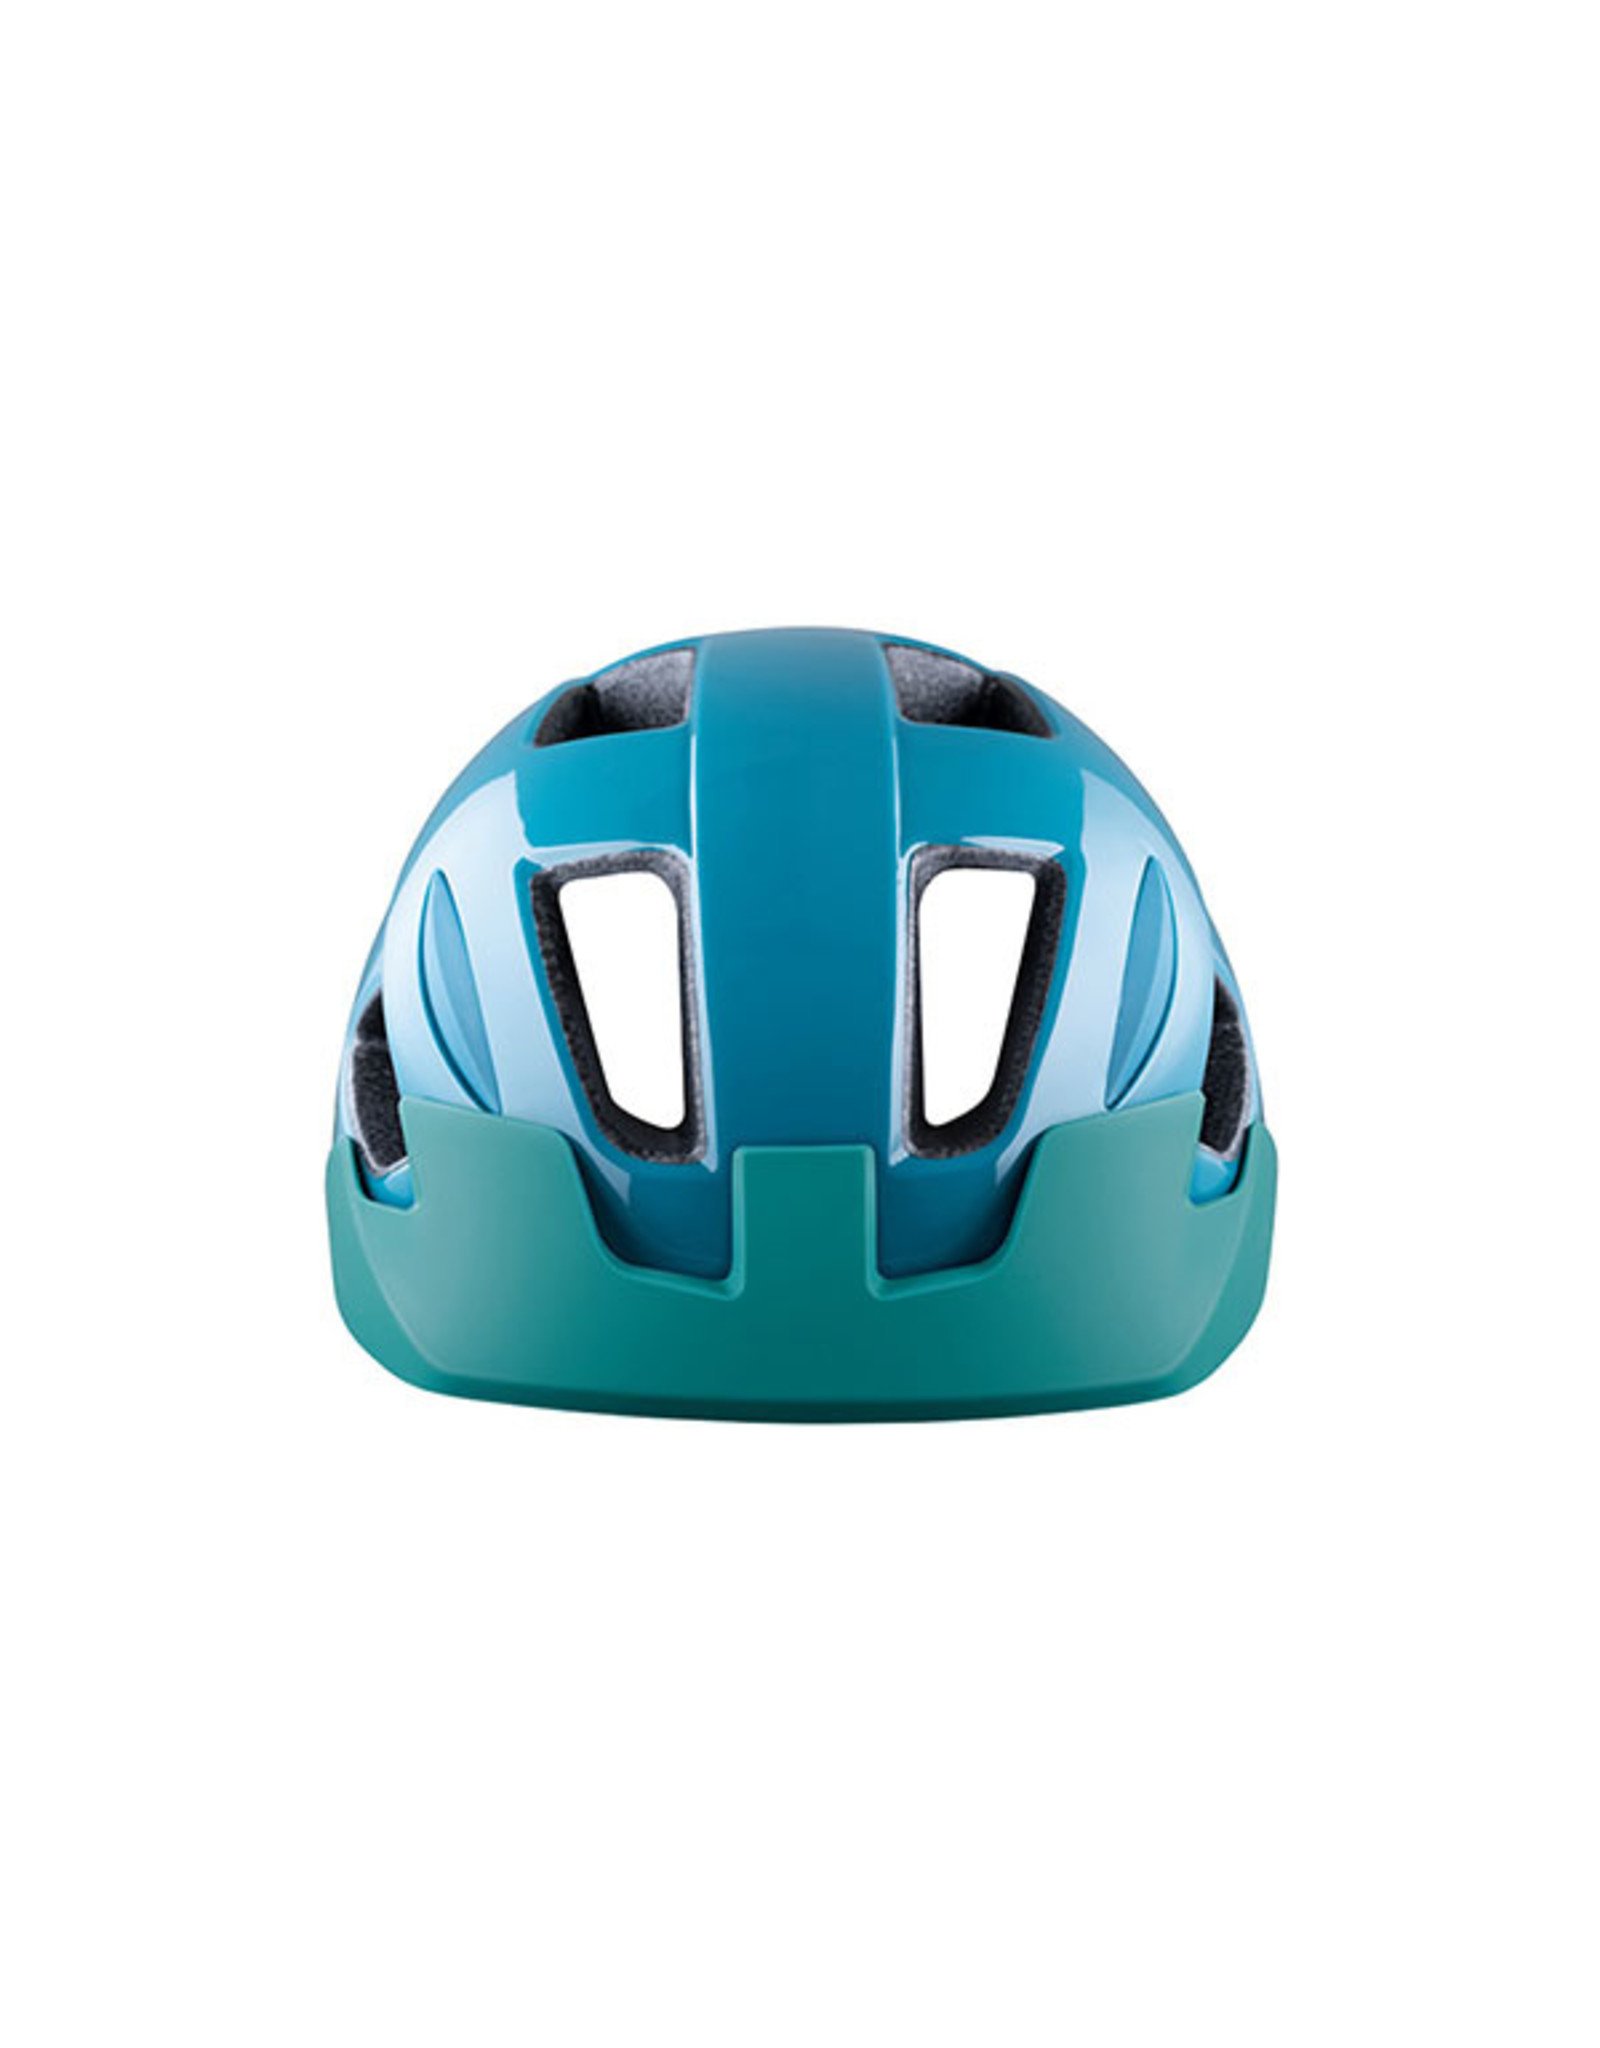 Helmet Blue w/ Yellow Unisize Kids (50-56 cm) Gekko Lazer